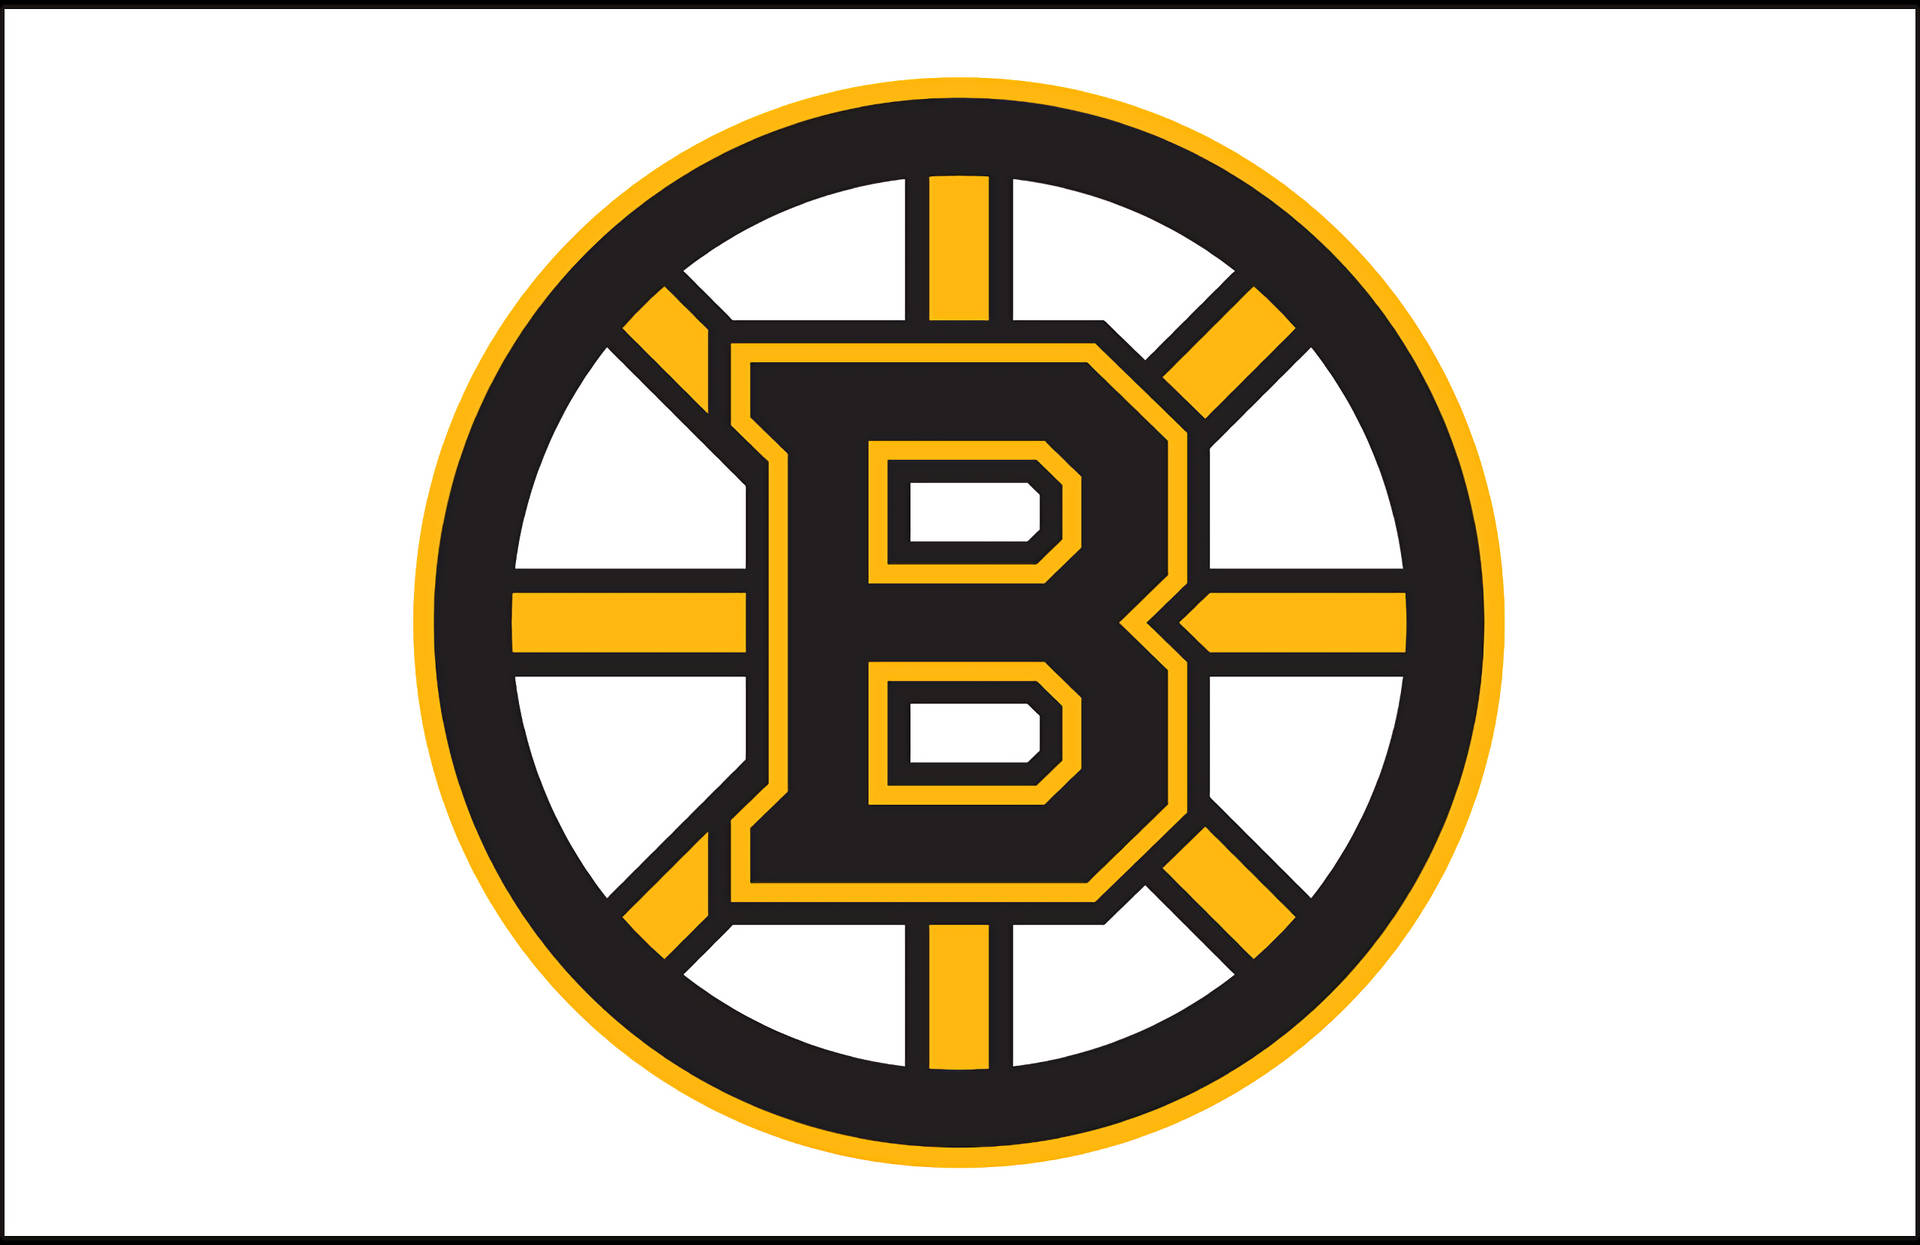 Boston Bruins Plain White Background